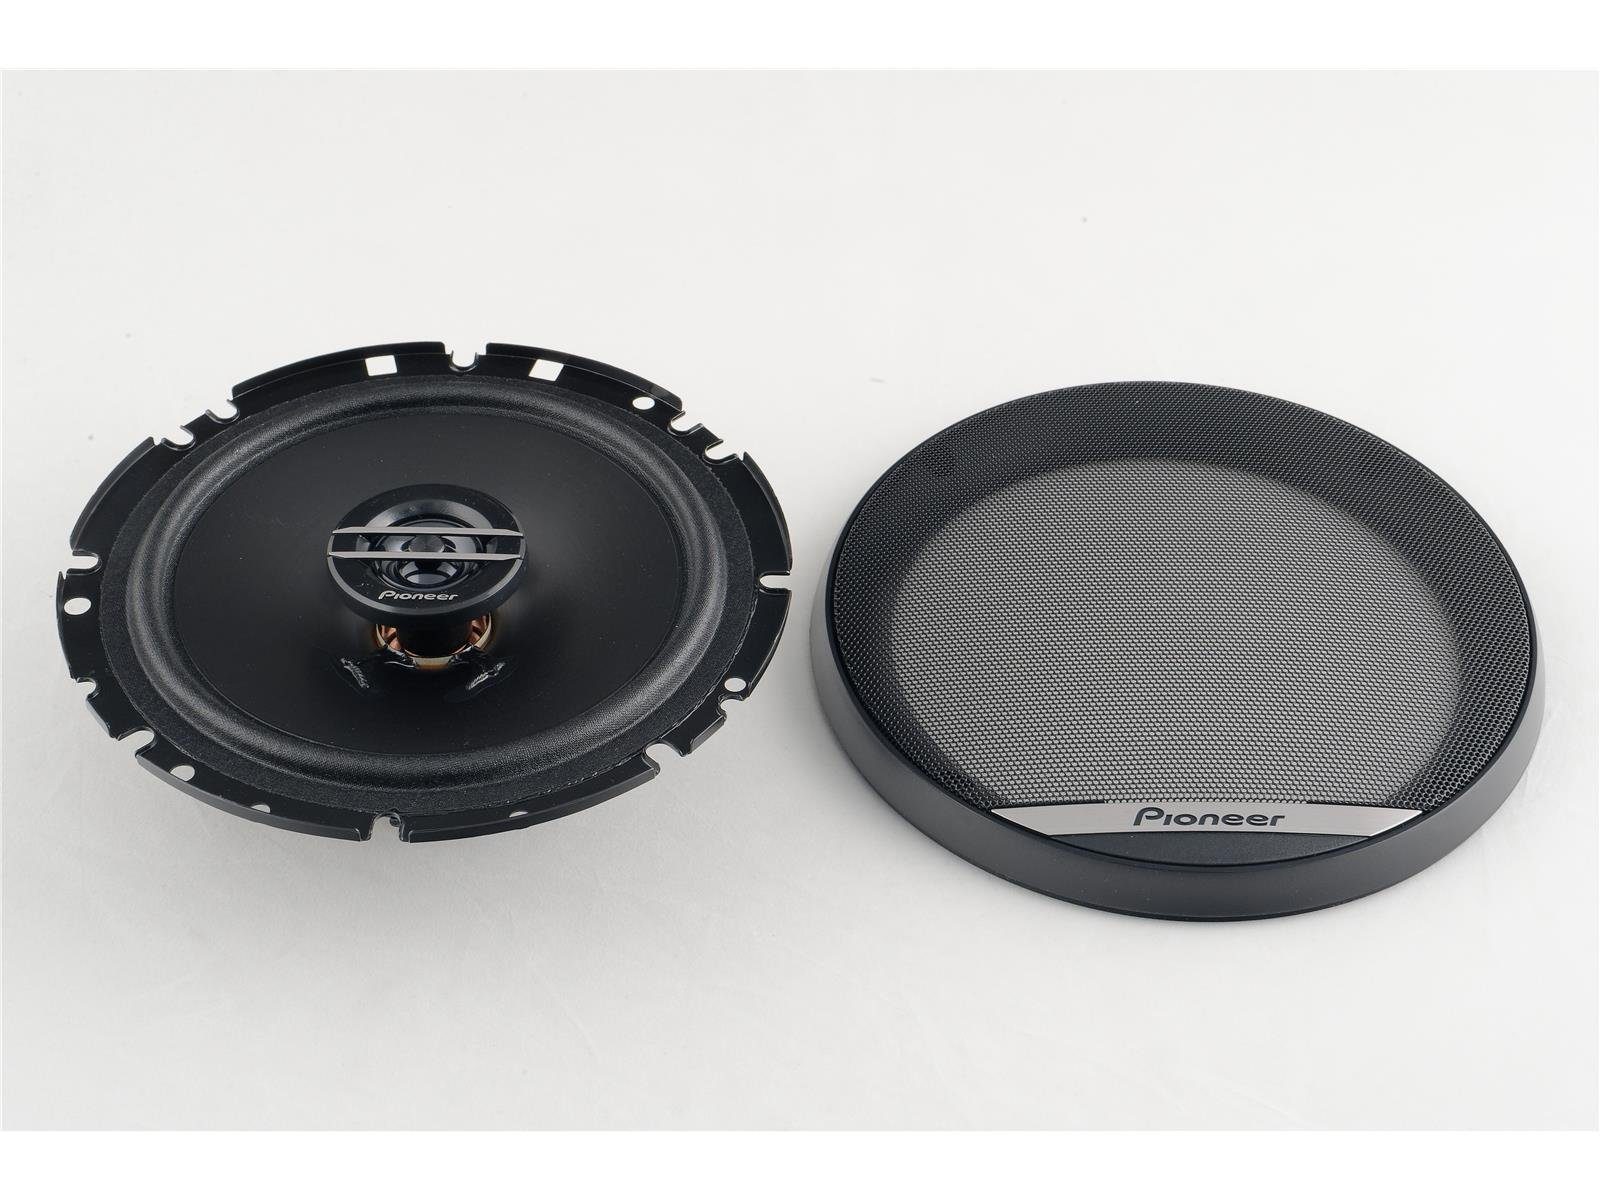 Hyundai Lautsprecher Auto-Lautsprecher passend ab 2015 Pioneer Pioneer oder vorne hinten für i20